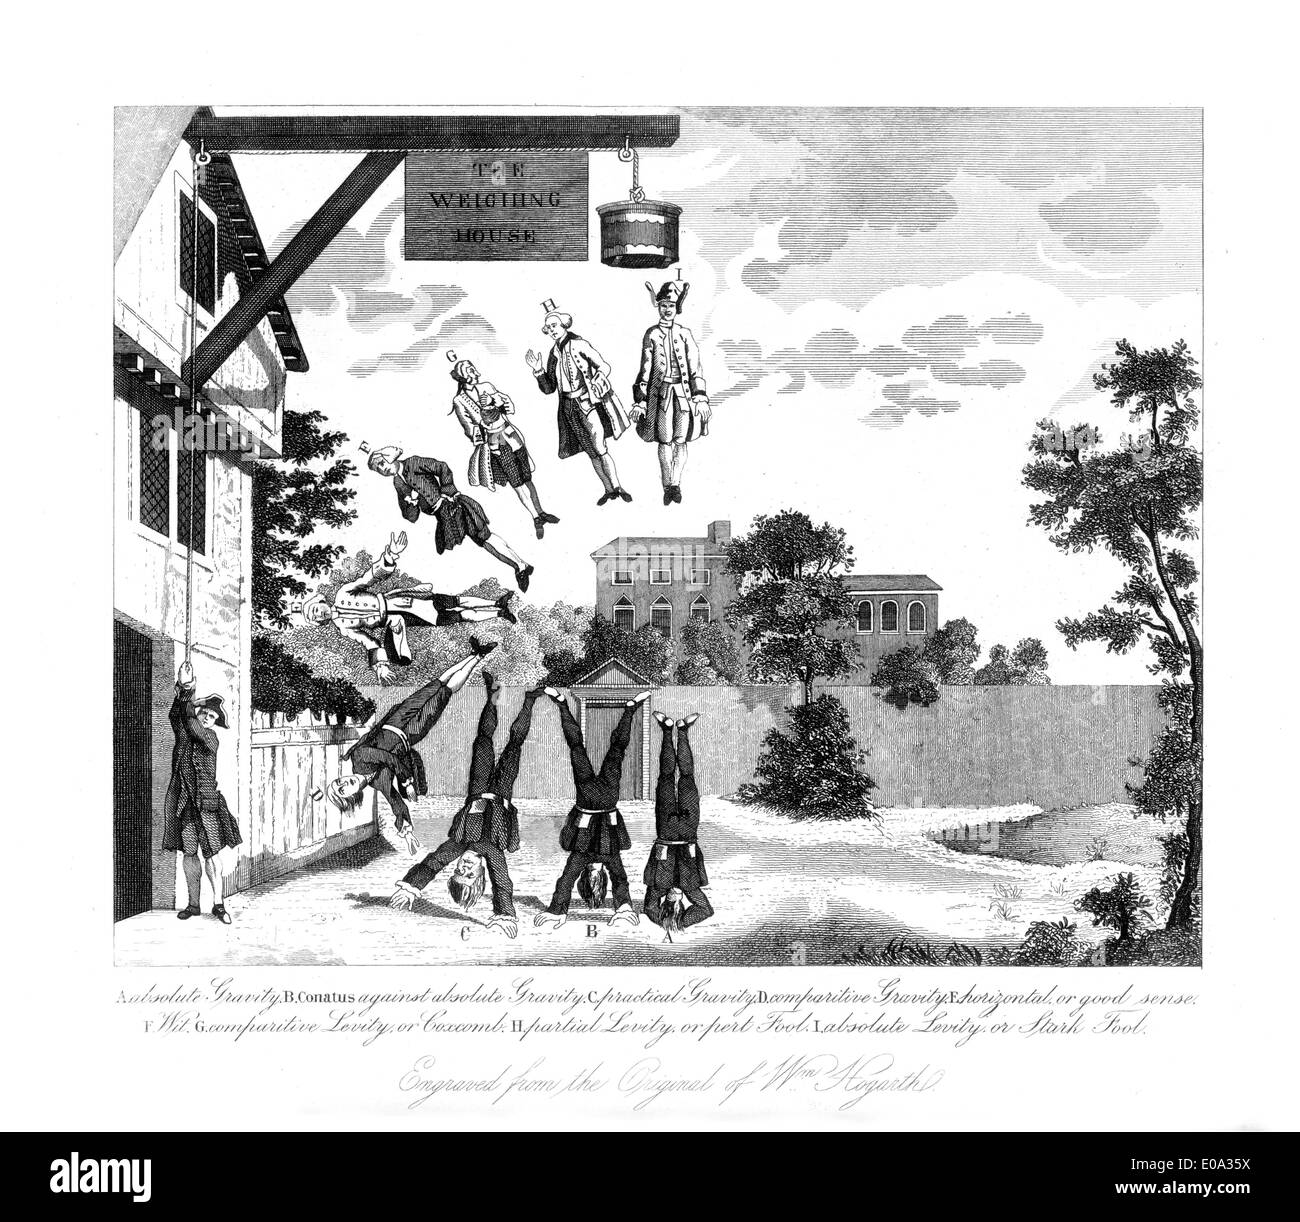 Après Gravure de William Hogarth ; la chambre de pesée, conçu en 1763 par Hogarth pour illustrer un clergyman's brochure humoristique Banque D'Images